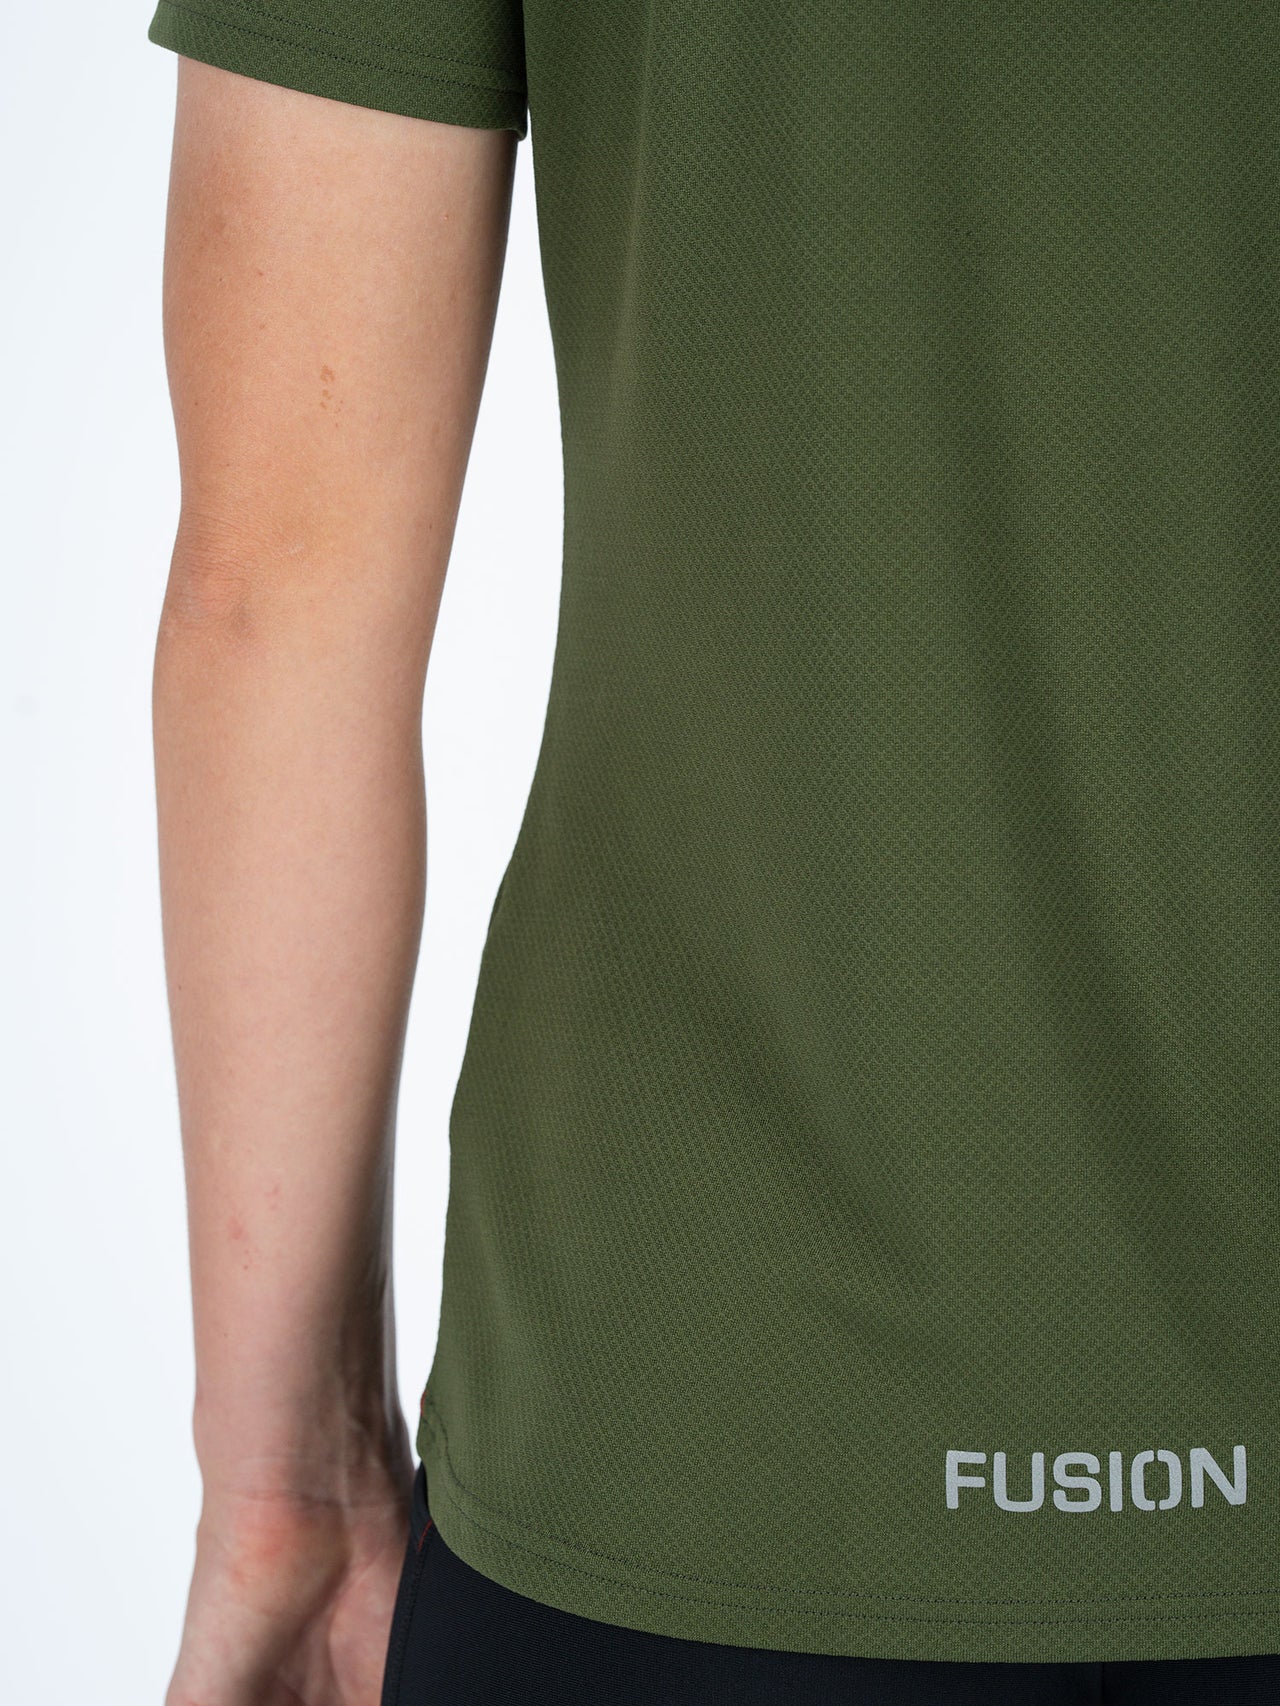 Fusion Nova T-Shirt Dames